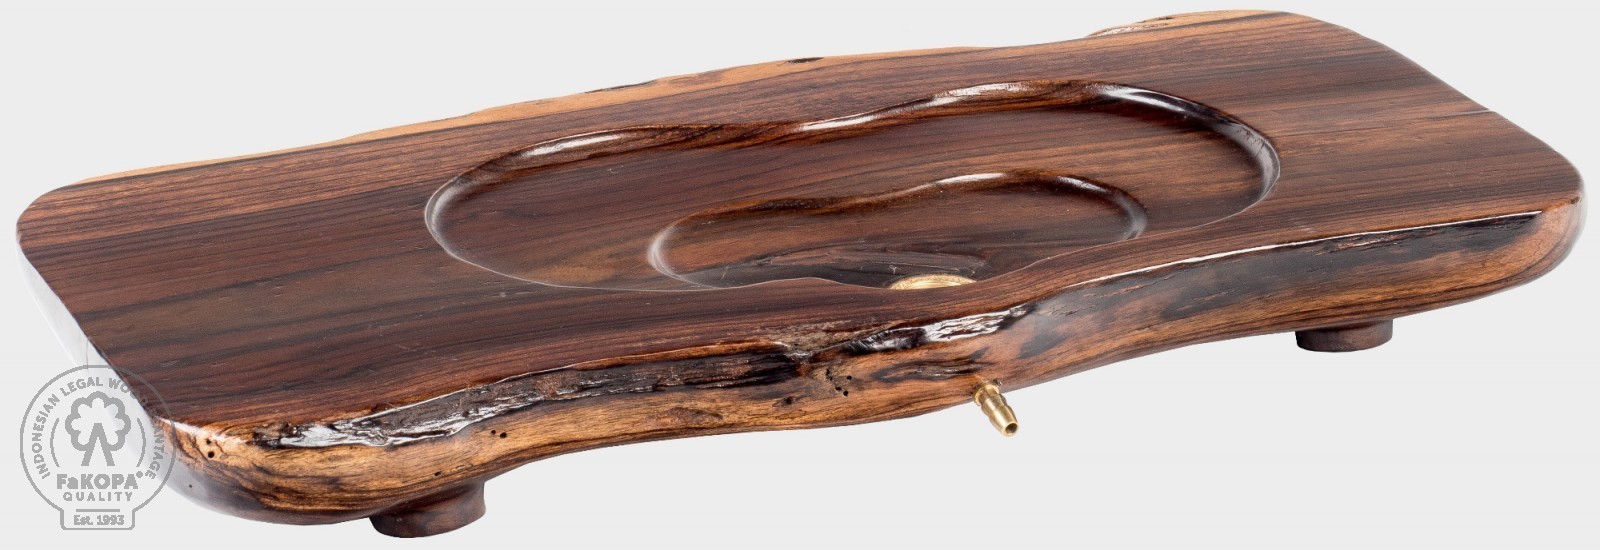 FaKOPA s. r. o. UMI V - čajové moře z rosewoodu 62 x 32 cm, rosewood